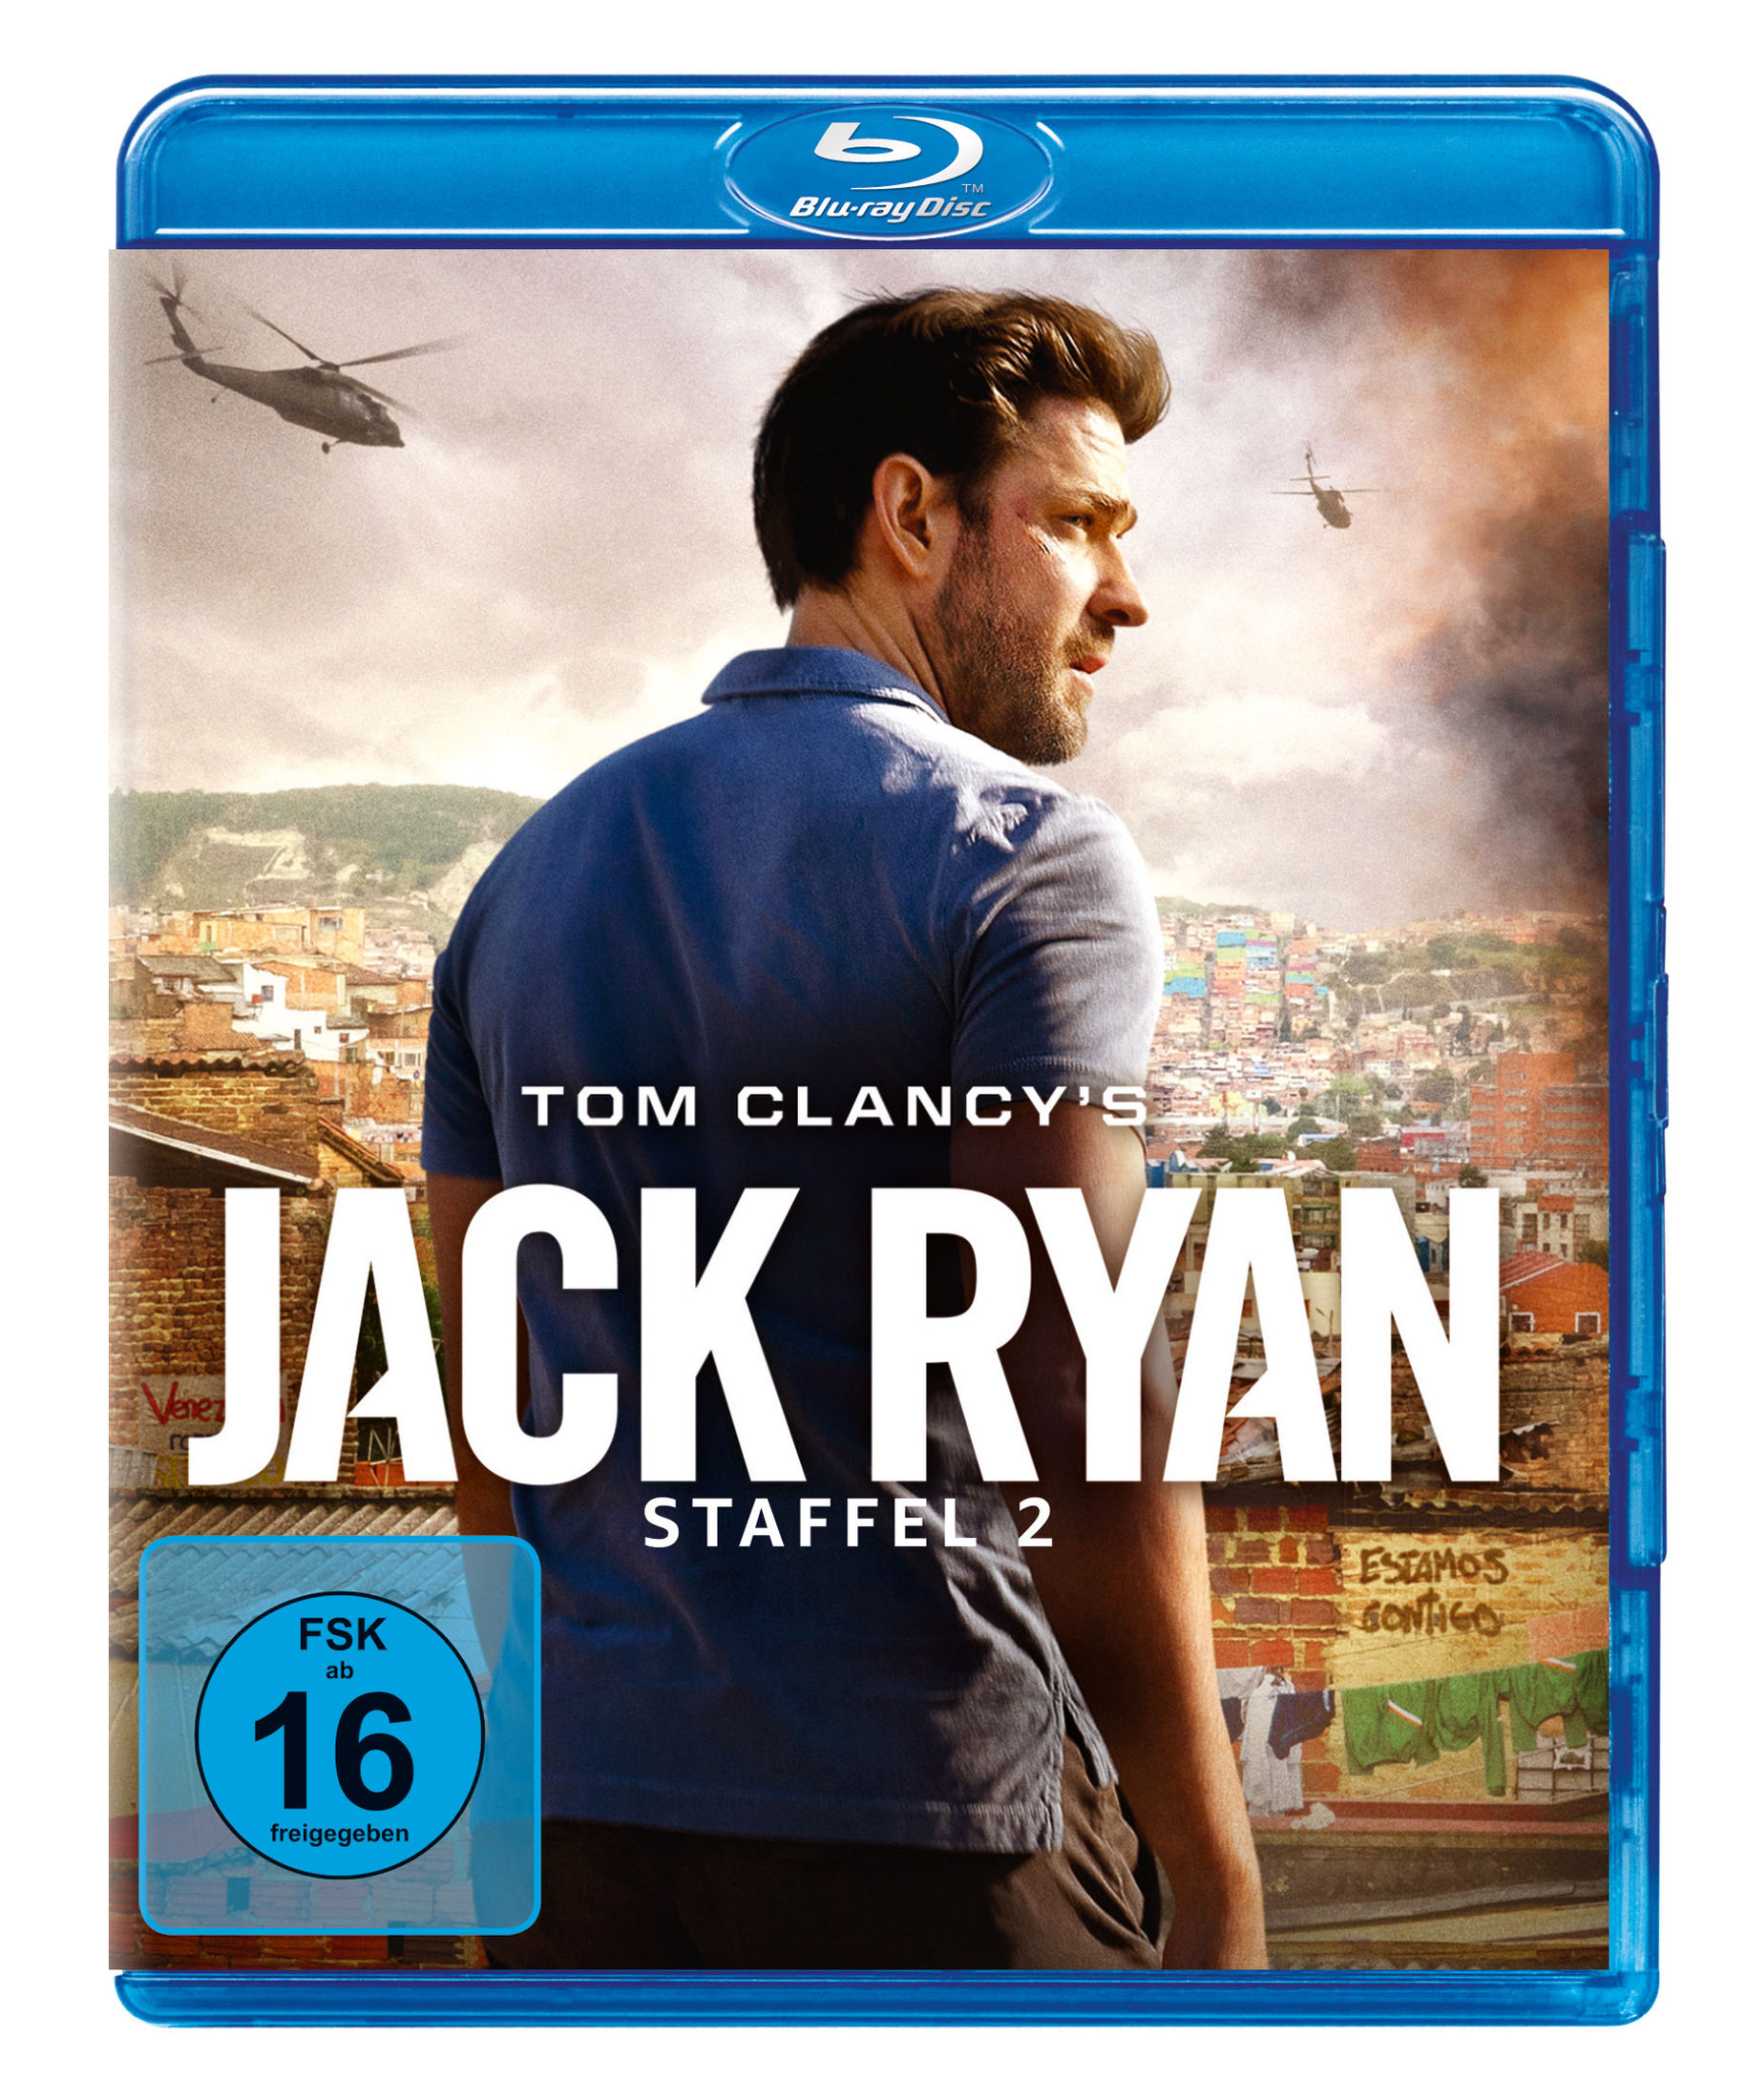 Tom Clancy's Jack Ryan - Staffel 2 Blu-ray bei Weltbild.at kaufen